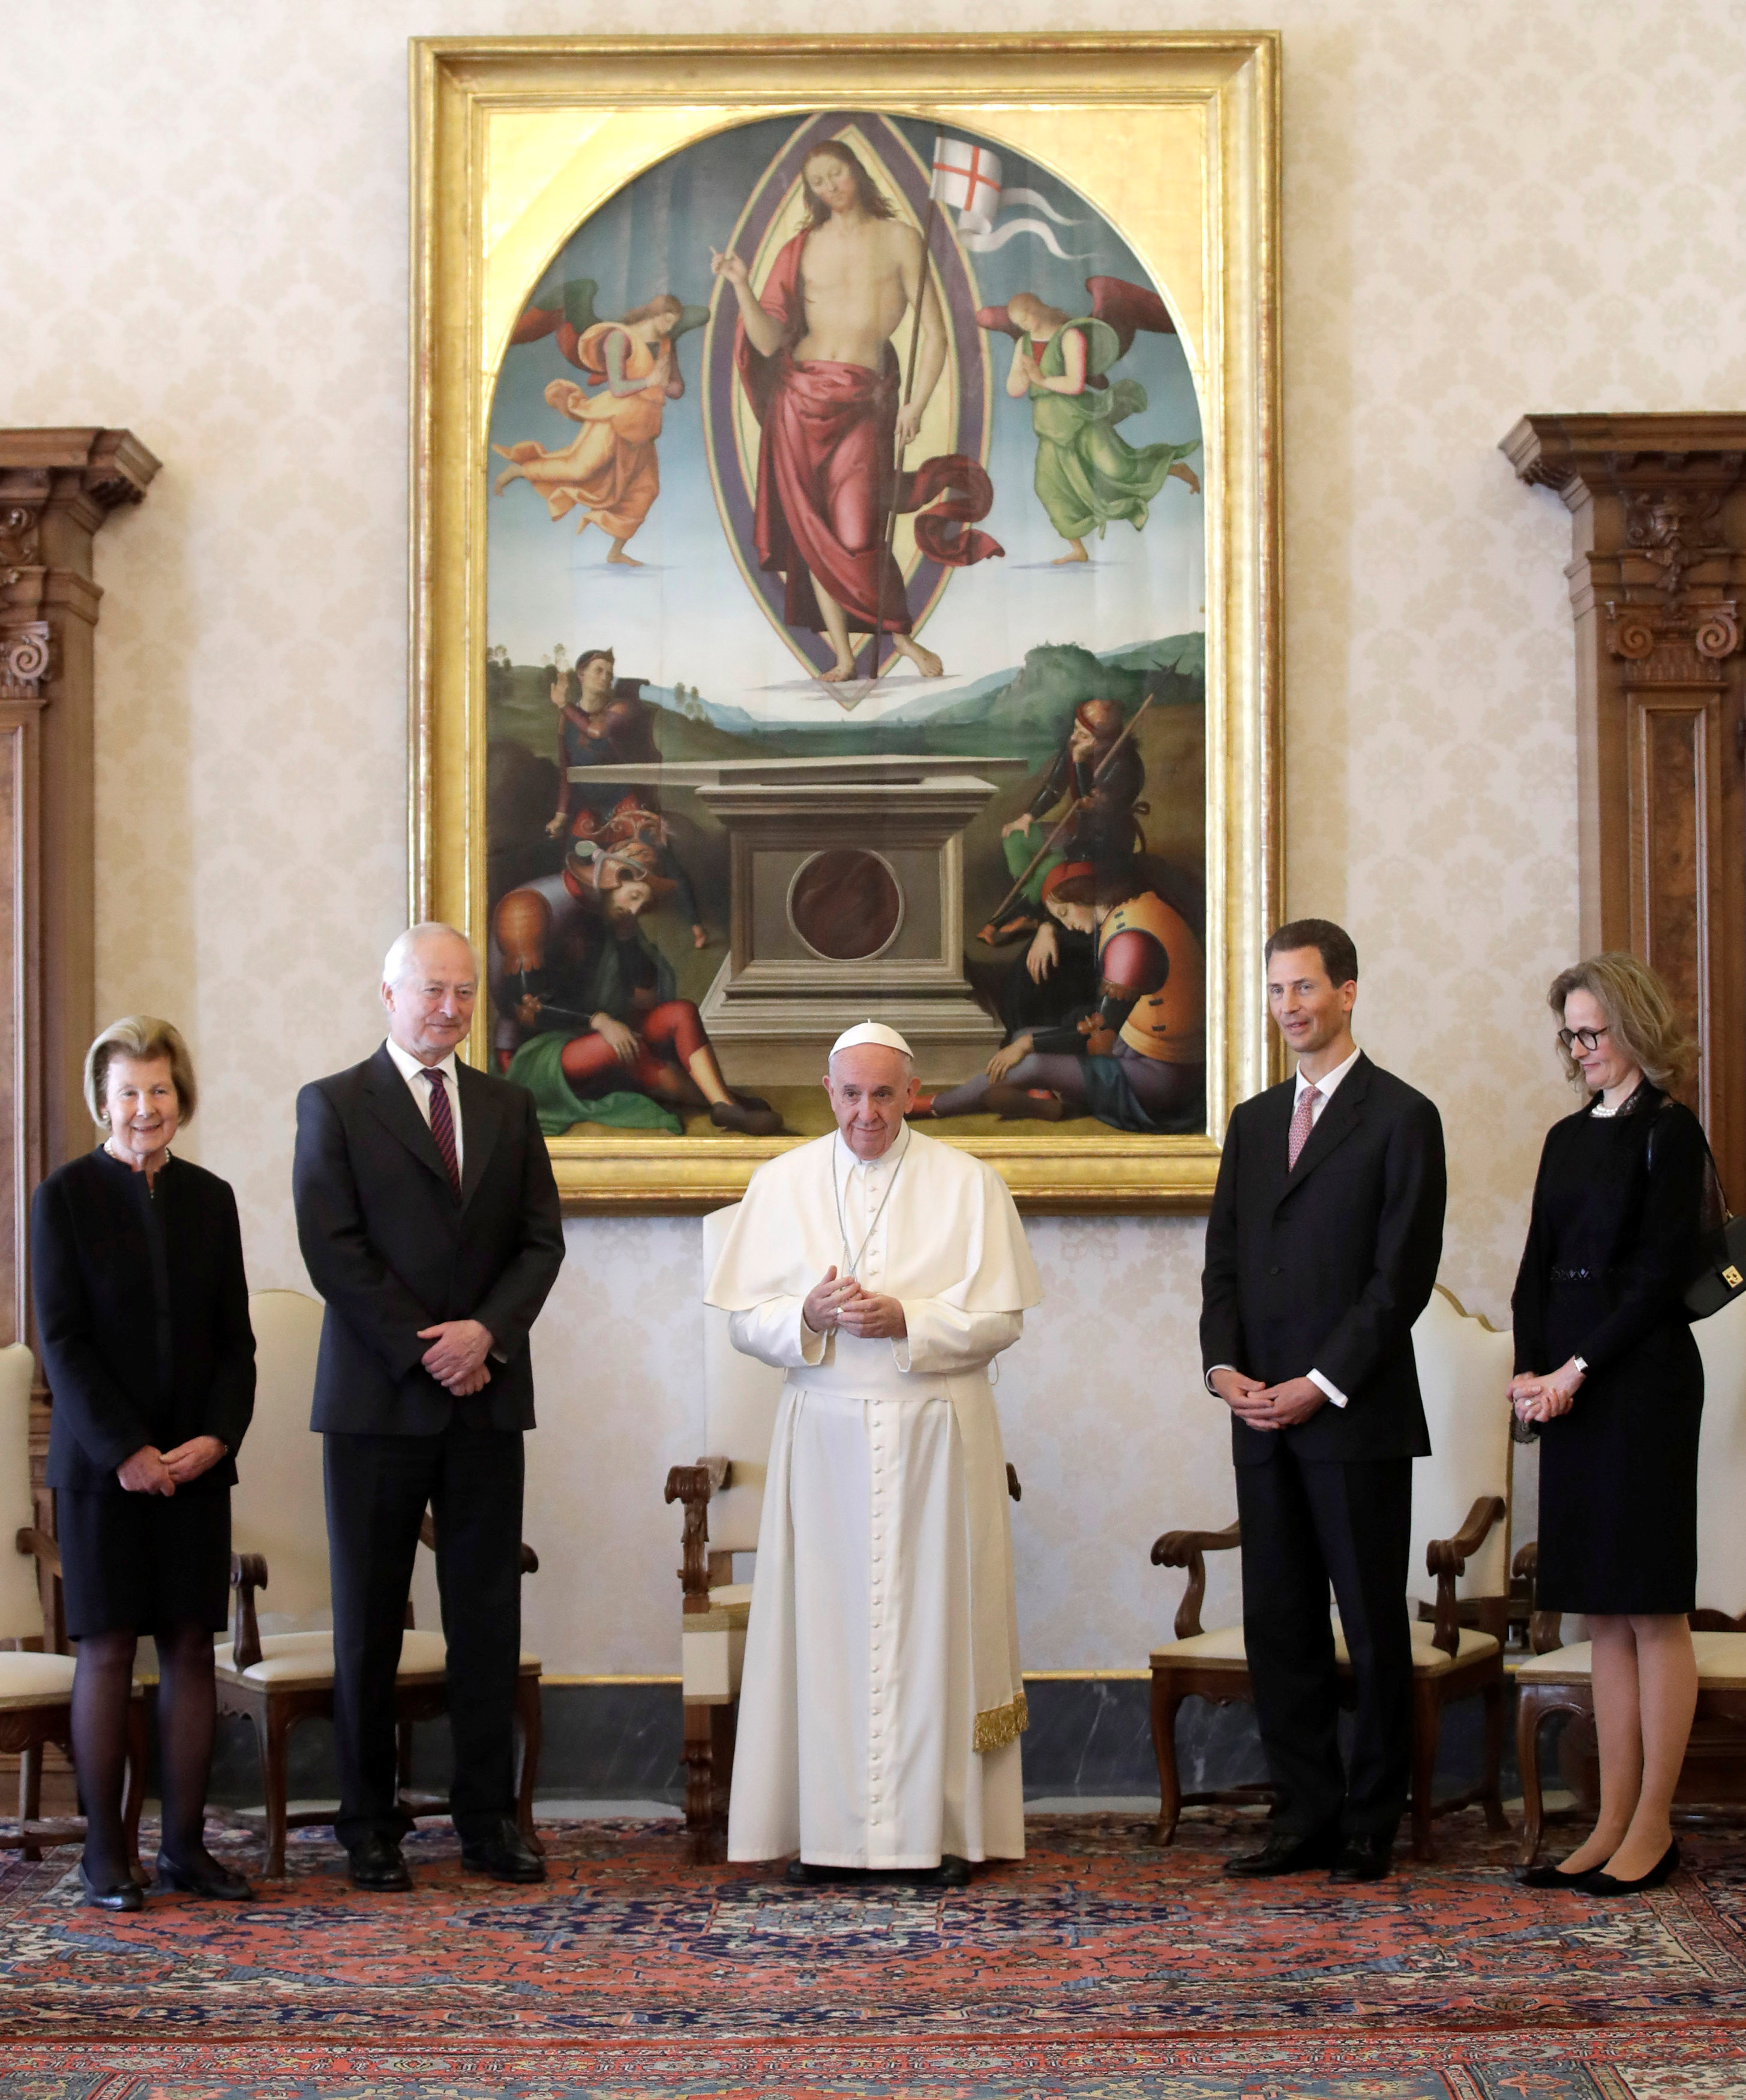 البابا فرانسيس يلتقي الأمير هانز آدم وزوجته